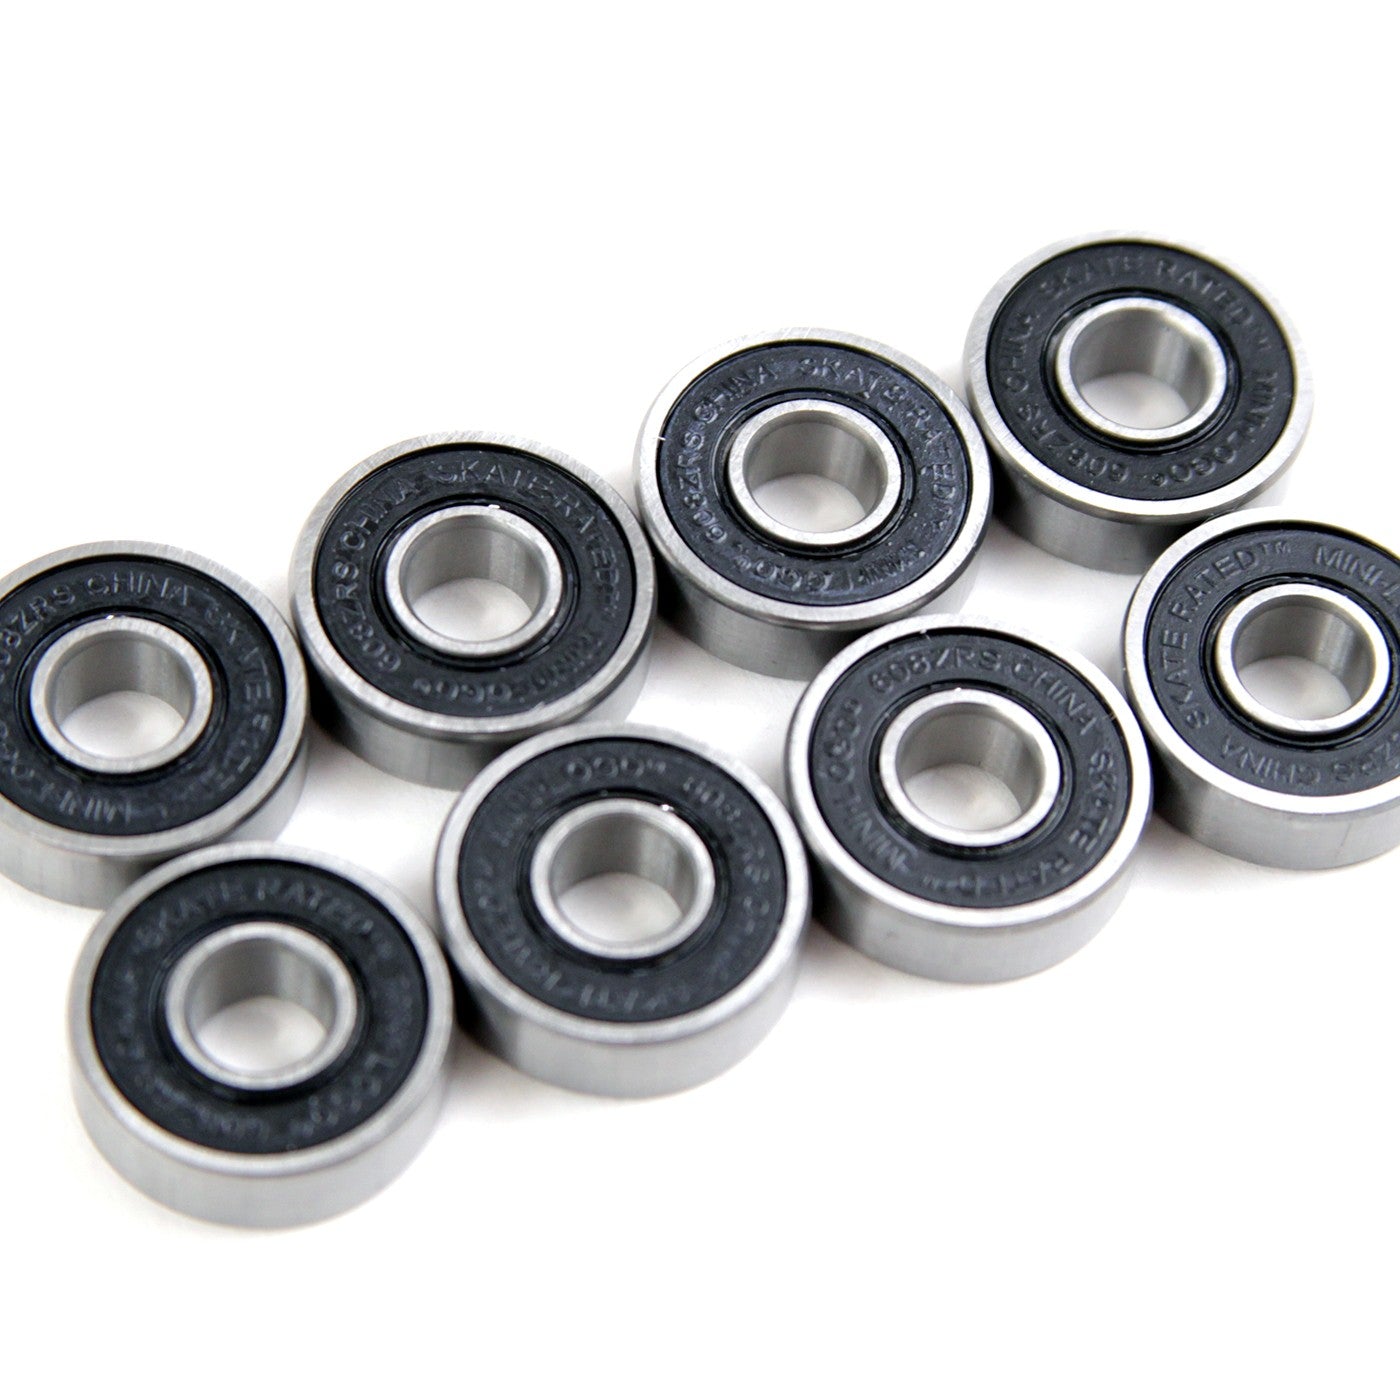 Mini-Logo bearings, pack of 8 bearings for rollerskates, skateboarding, inline skating